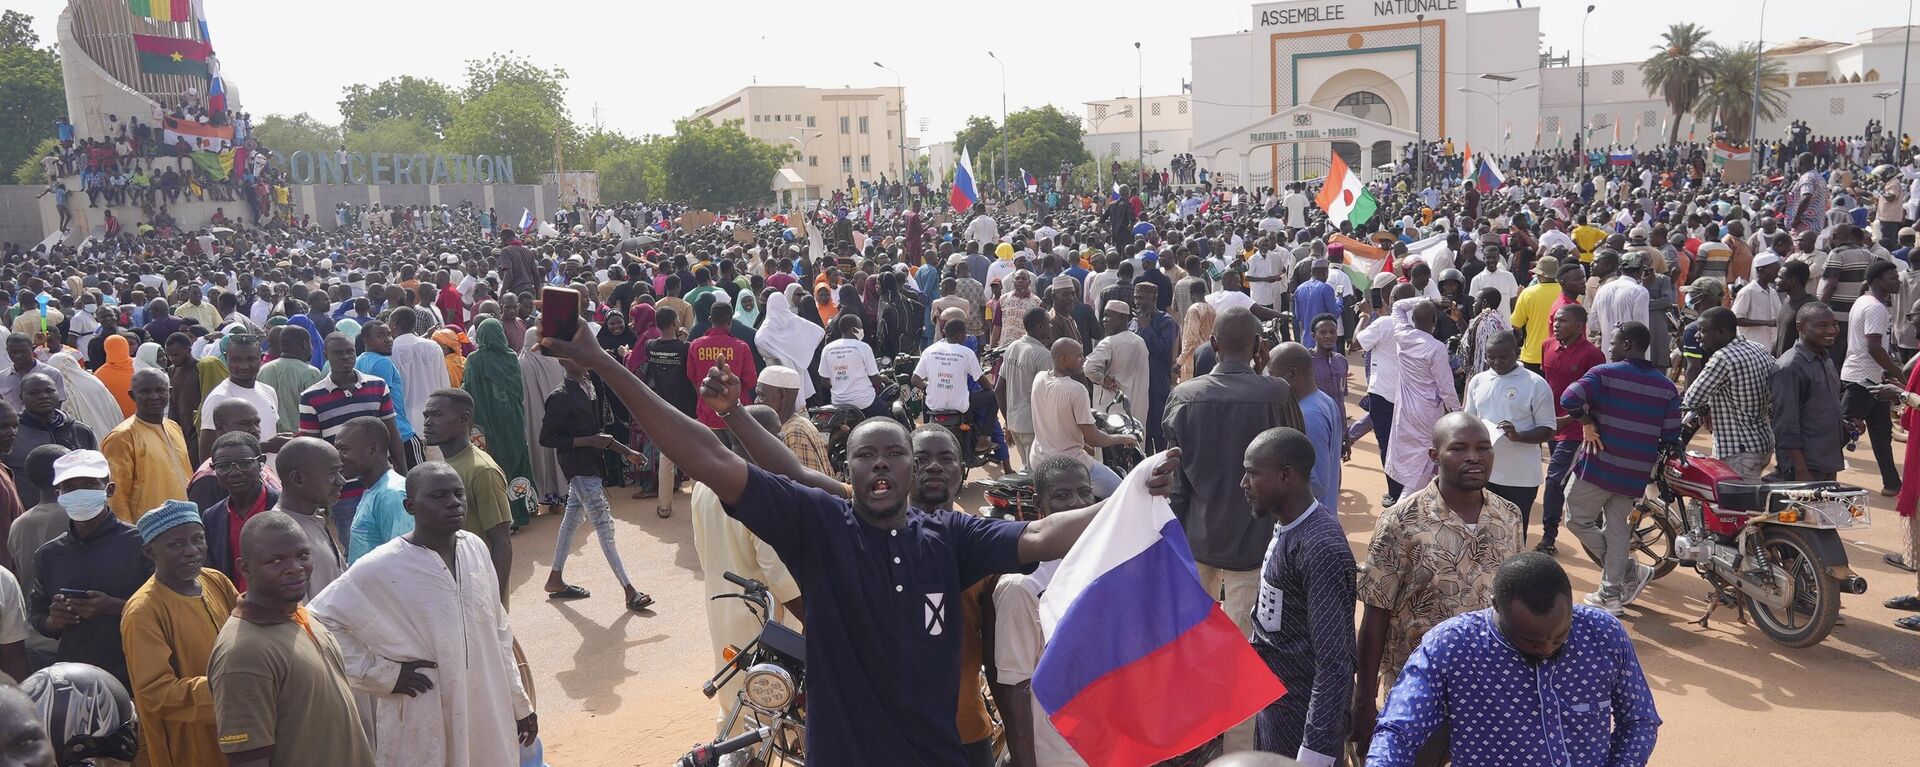 Nigerinos, algunos con banderas rusas, participan en una marcha convocada por los partidarios del golpista general Abdourahmane Tchiani en Niamey, Níger, el 30 de julio de 2023.  - Sputnik Mundo, 1920, 30.07.2023